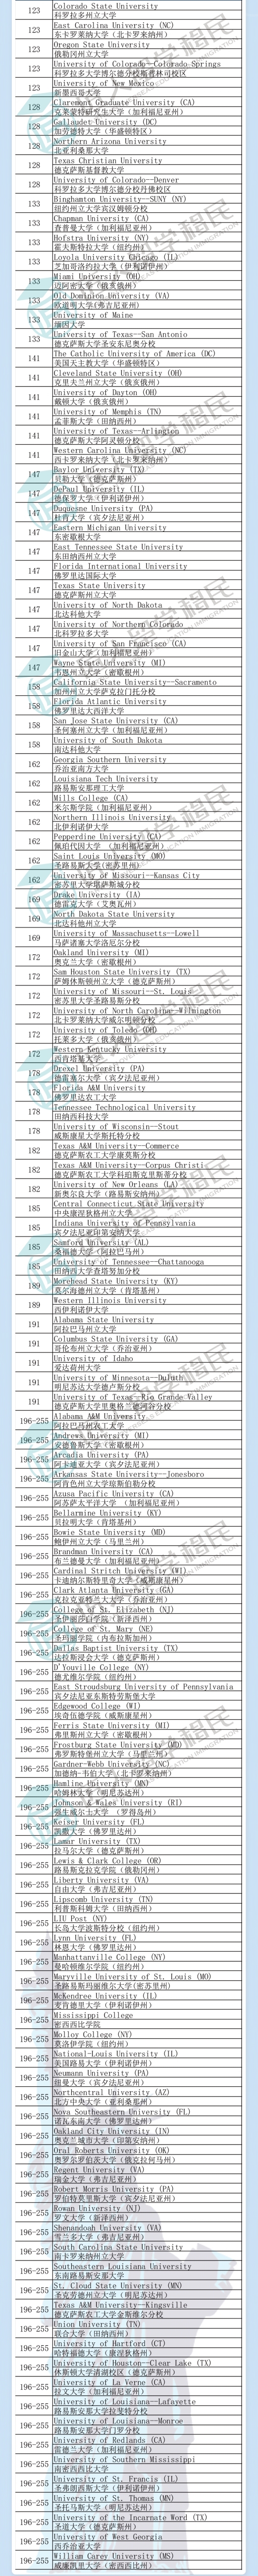 贵州2021年度U.S.News教育排名